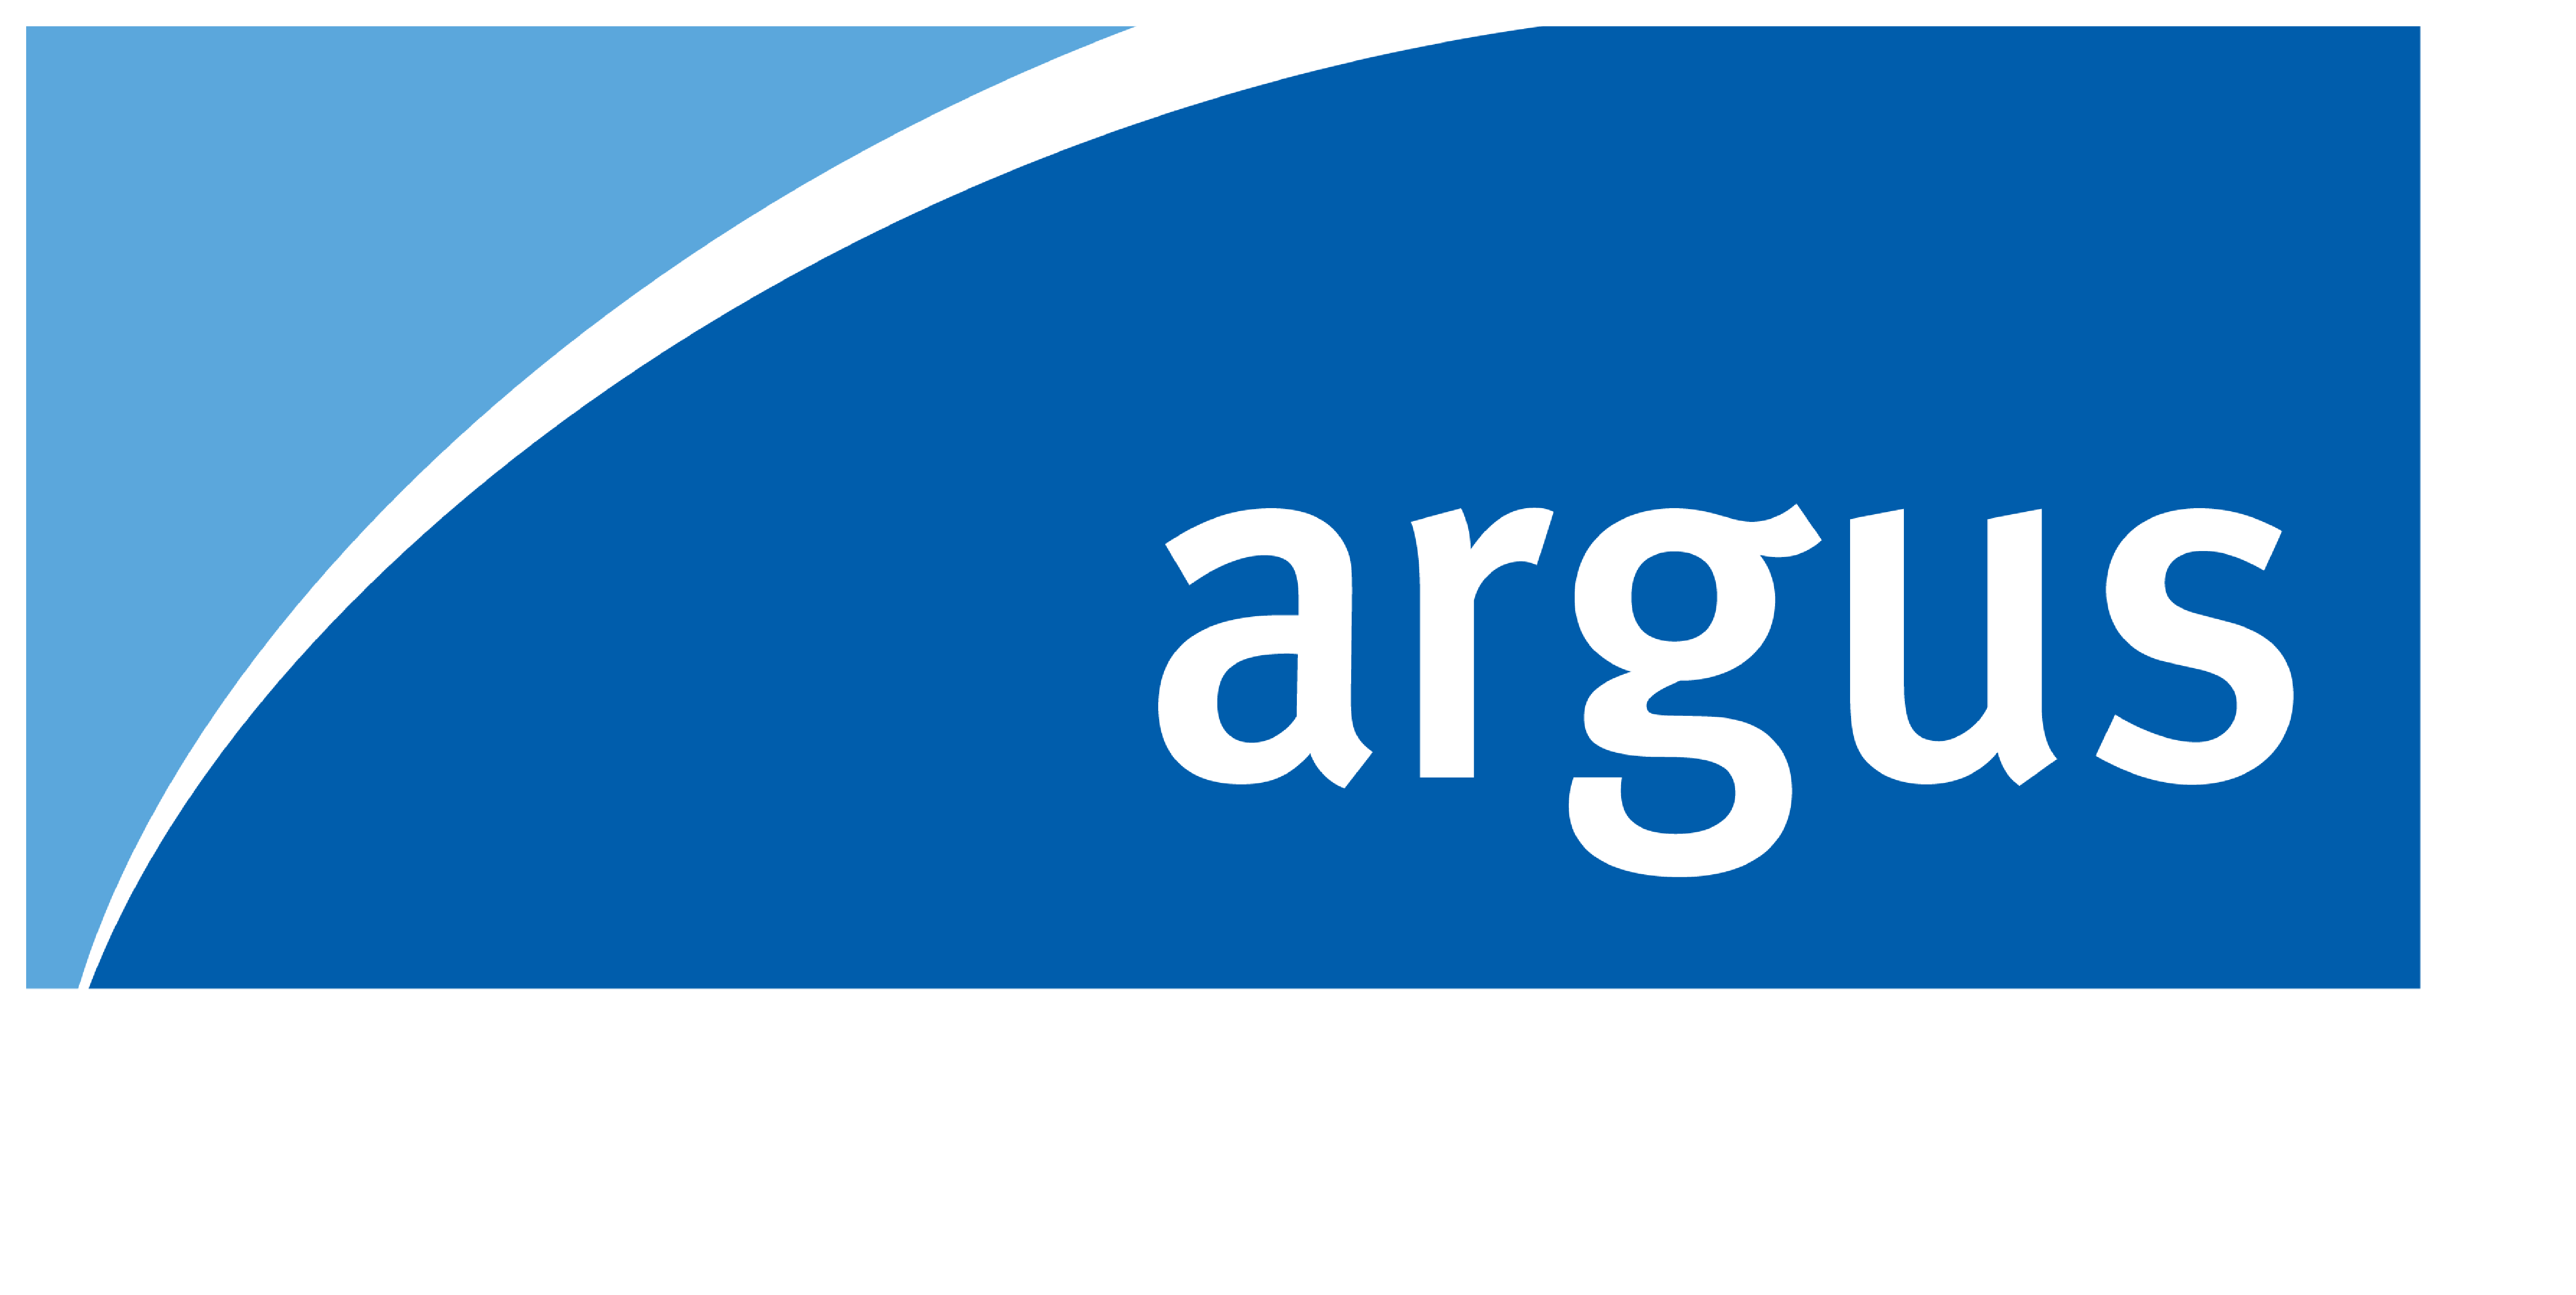 Agritel